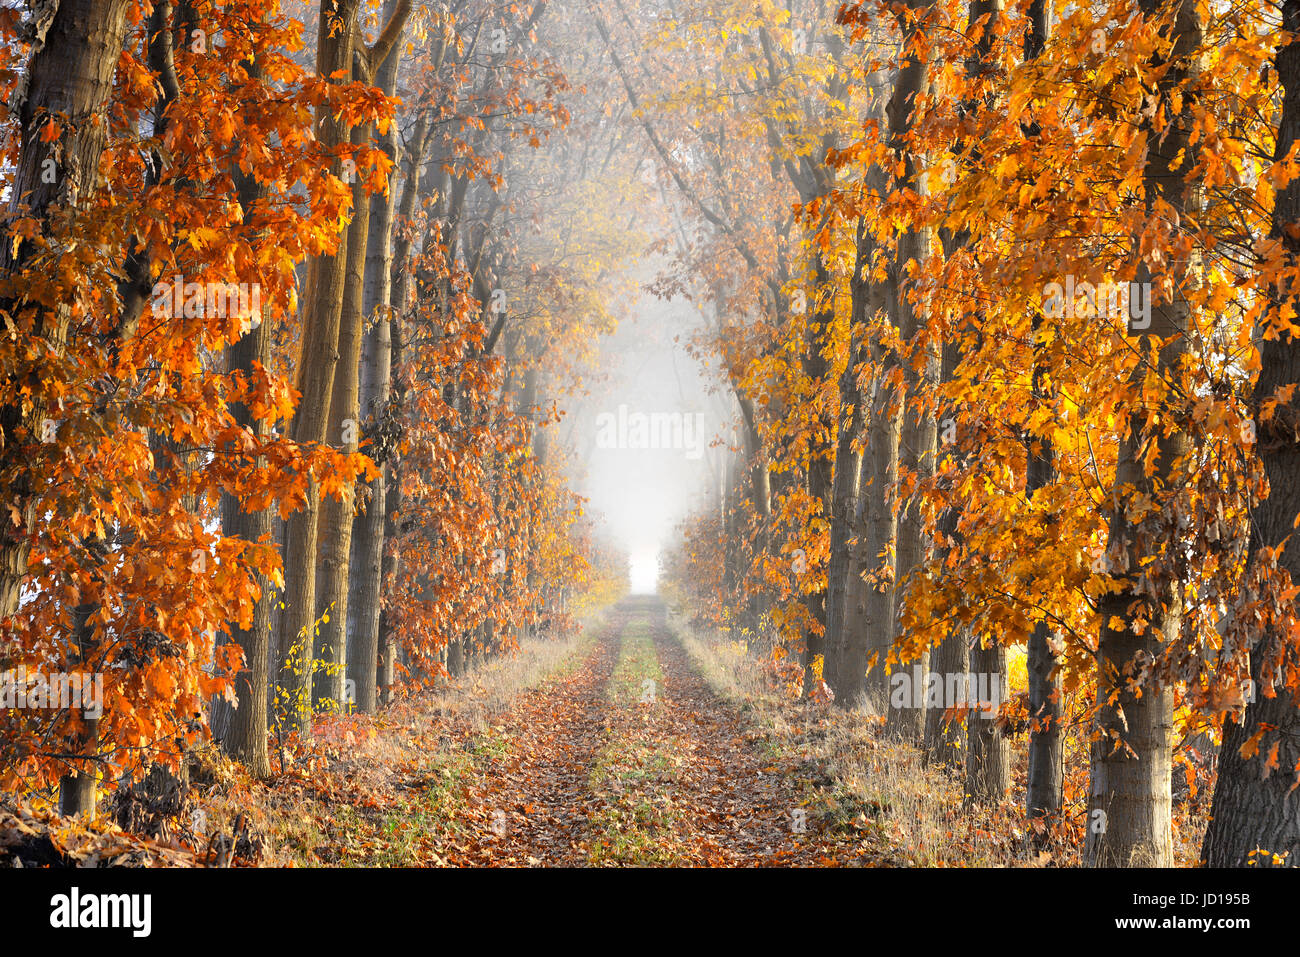 Una corsia con foglie cadute a terra delimitate da alberi in autunno colori che mostra grande prospettiva e terminando nella nebbia. Foto Stock